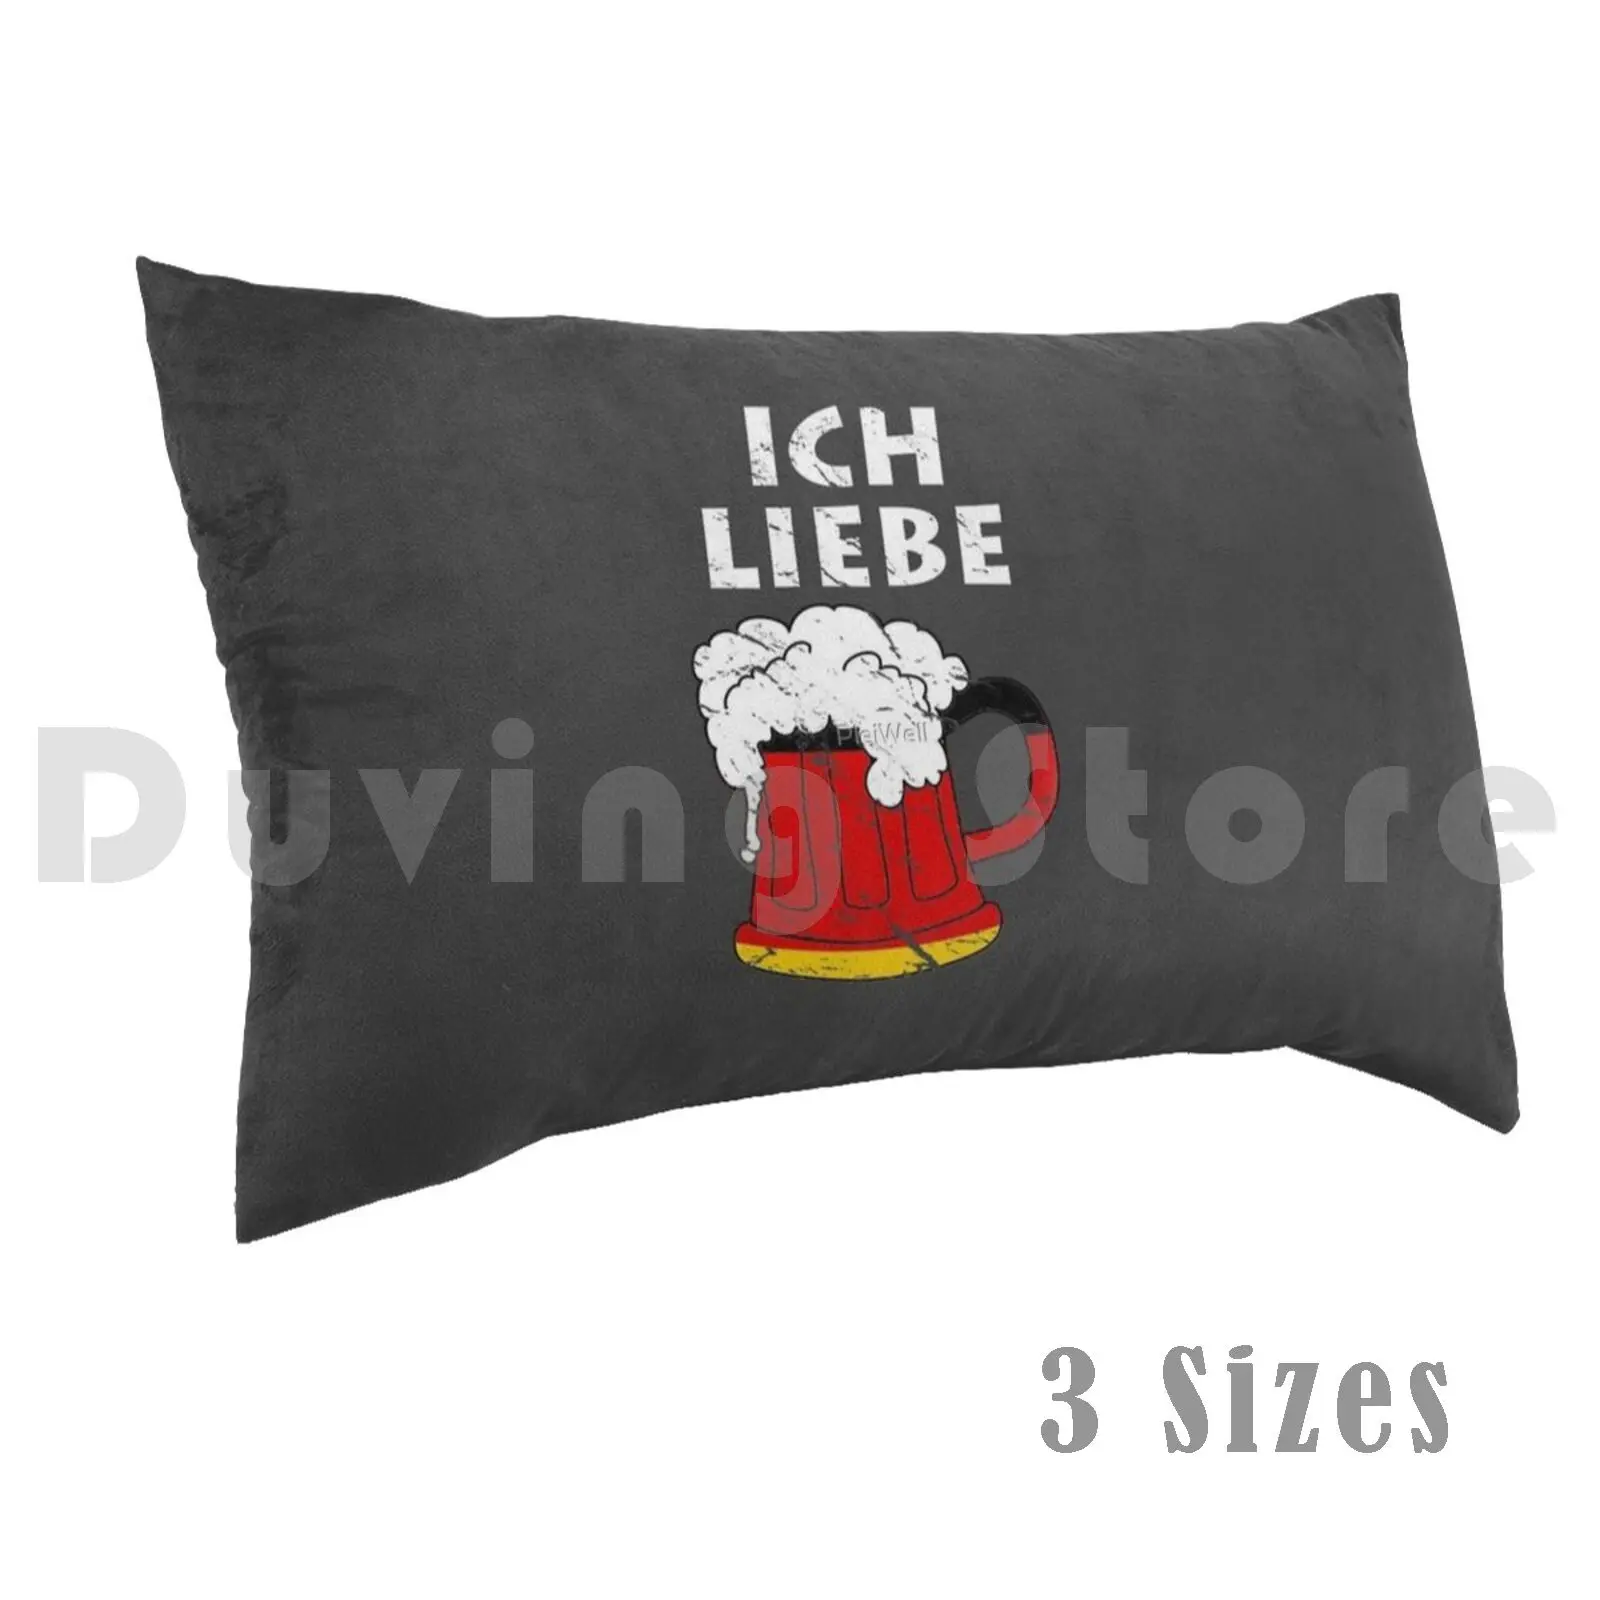 

Ich Liebe Bier Proud German Beer Lovers Germany Flag Pillow Case Printed 35x50 German Germany Deutschland